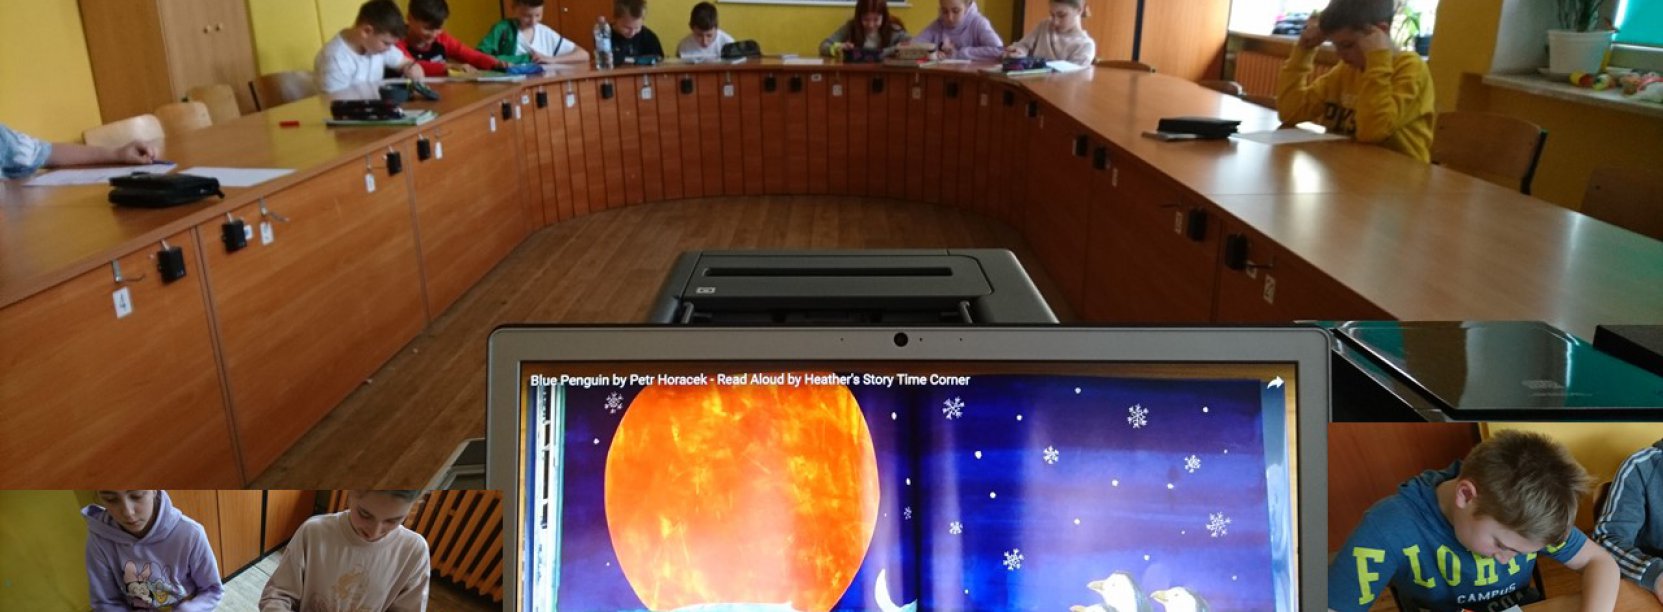 Ekran laptopa, na drugim planie ucnziowie przy stole